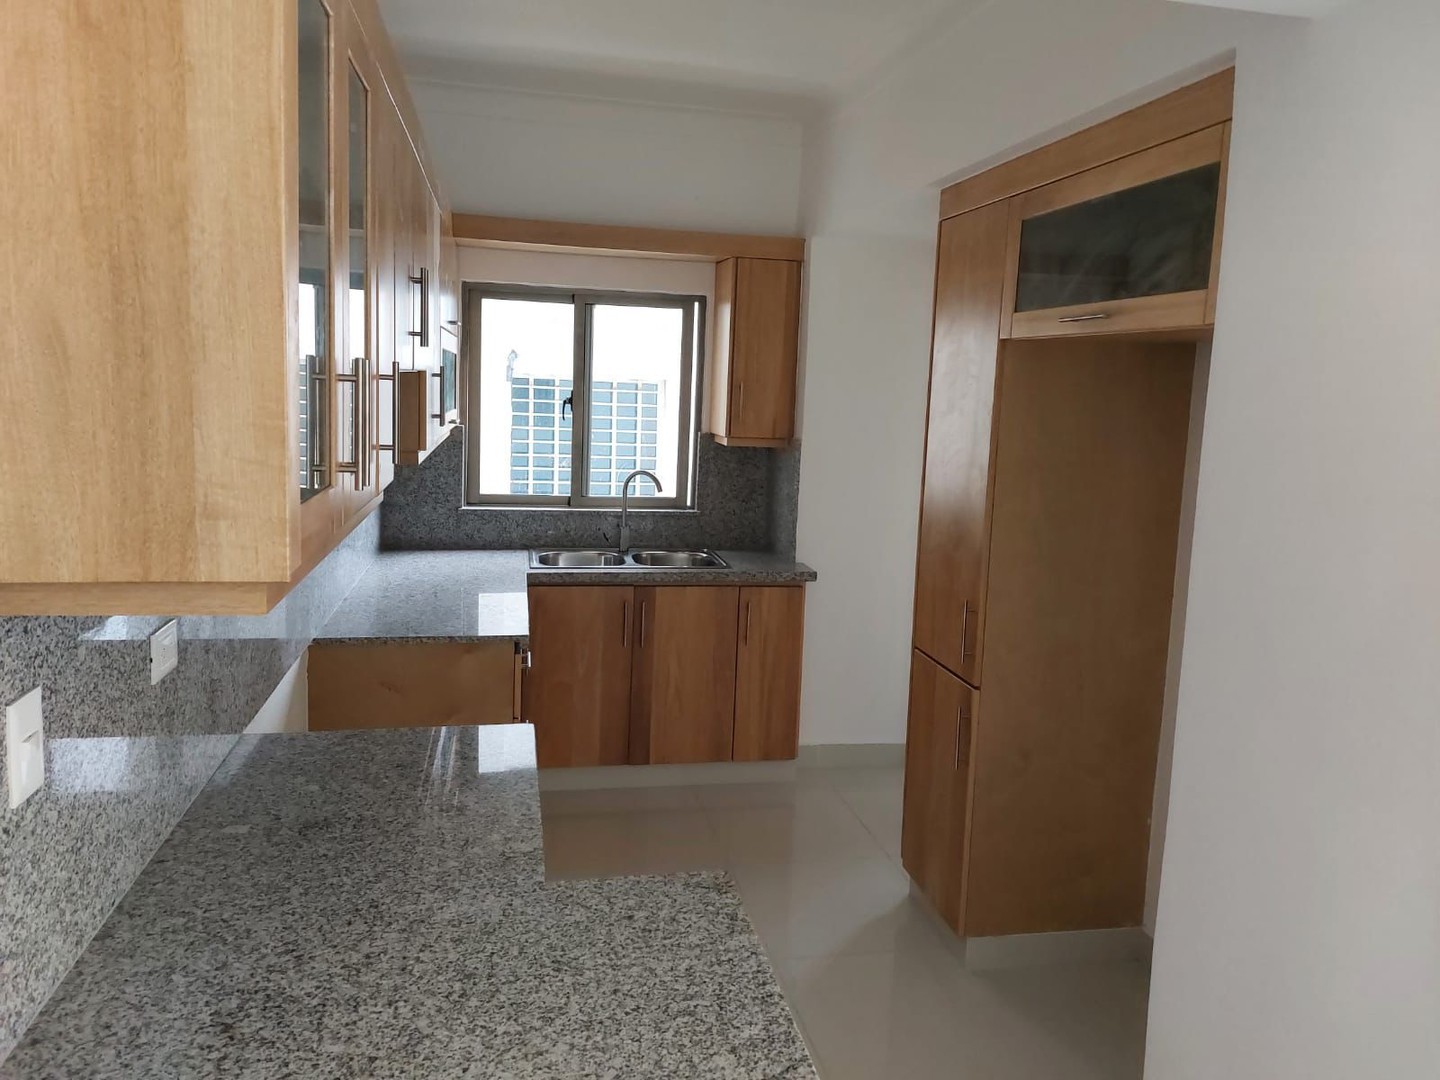 apartamentos - Apartamento Nuevo en Venta
LOS PRADOS
USD 215,000.00
Mantenimiento: RD$6,000.00
 3